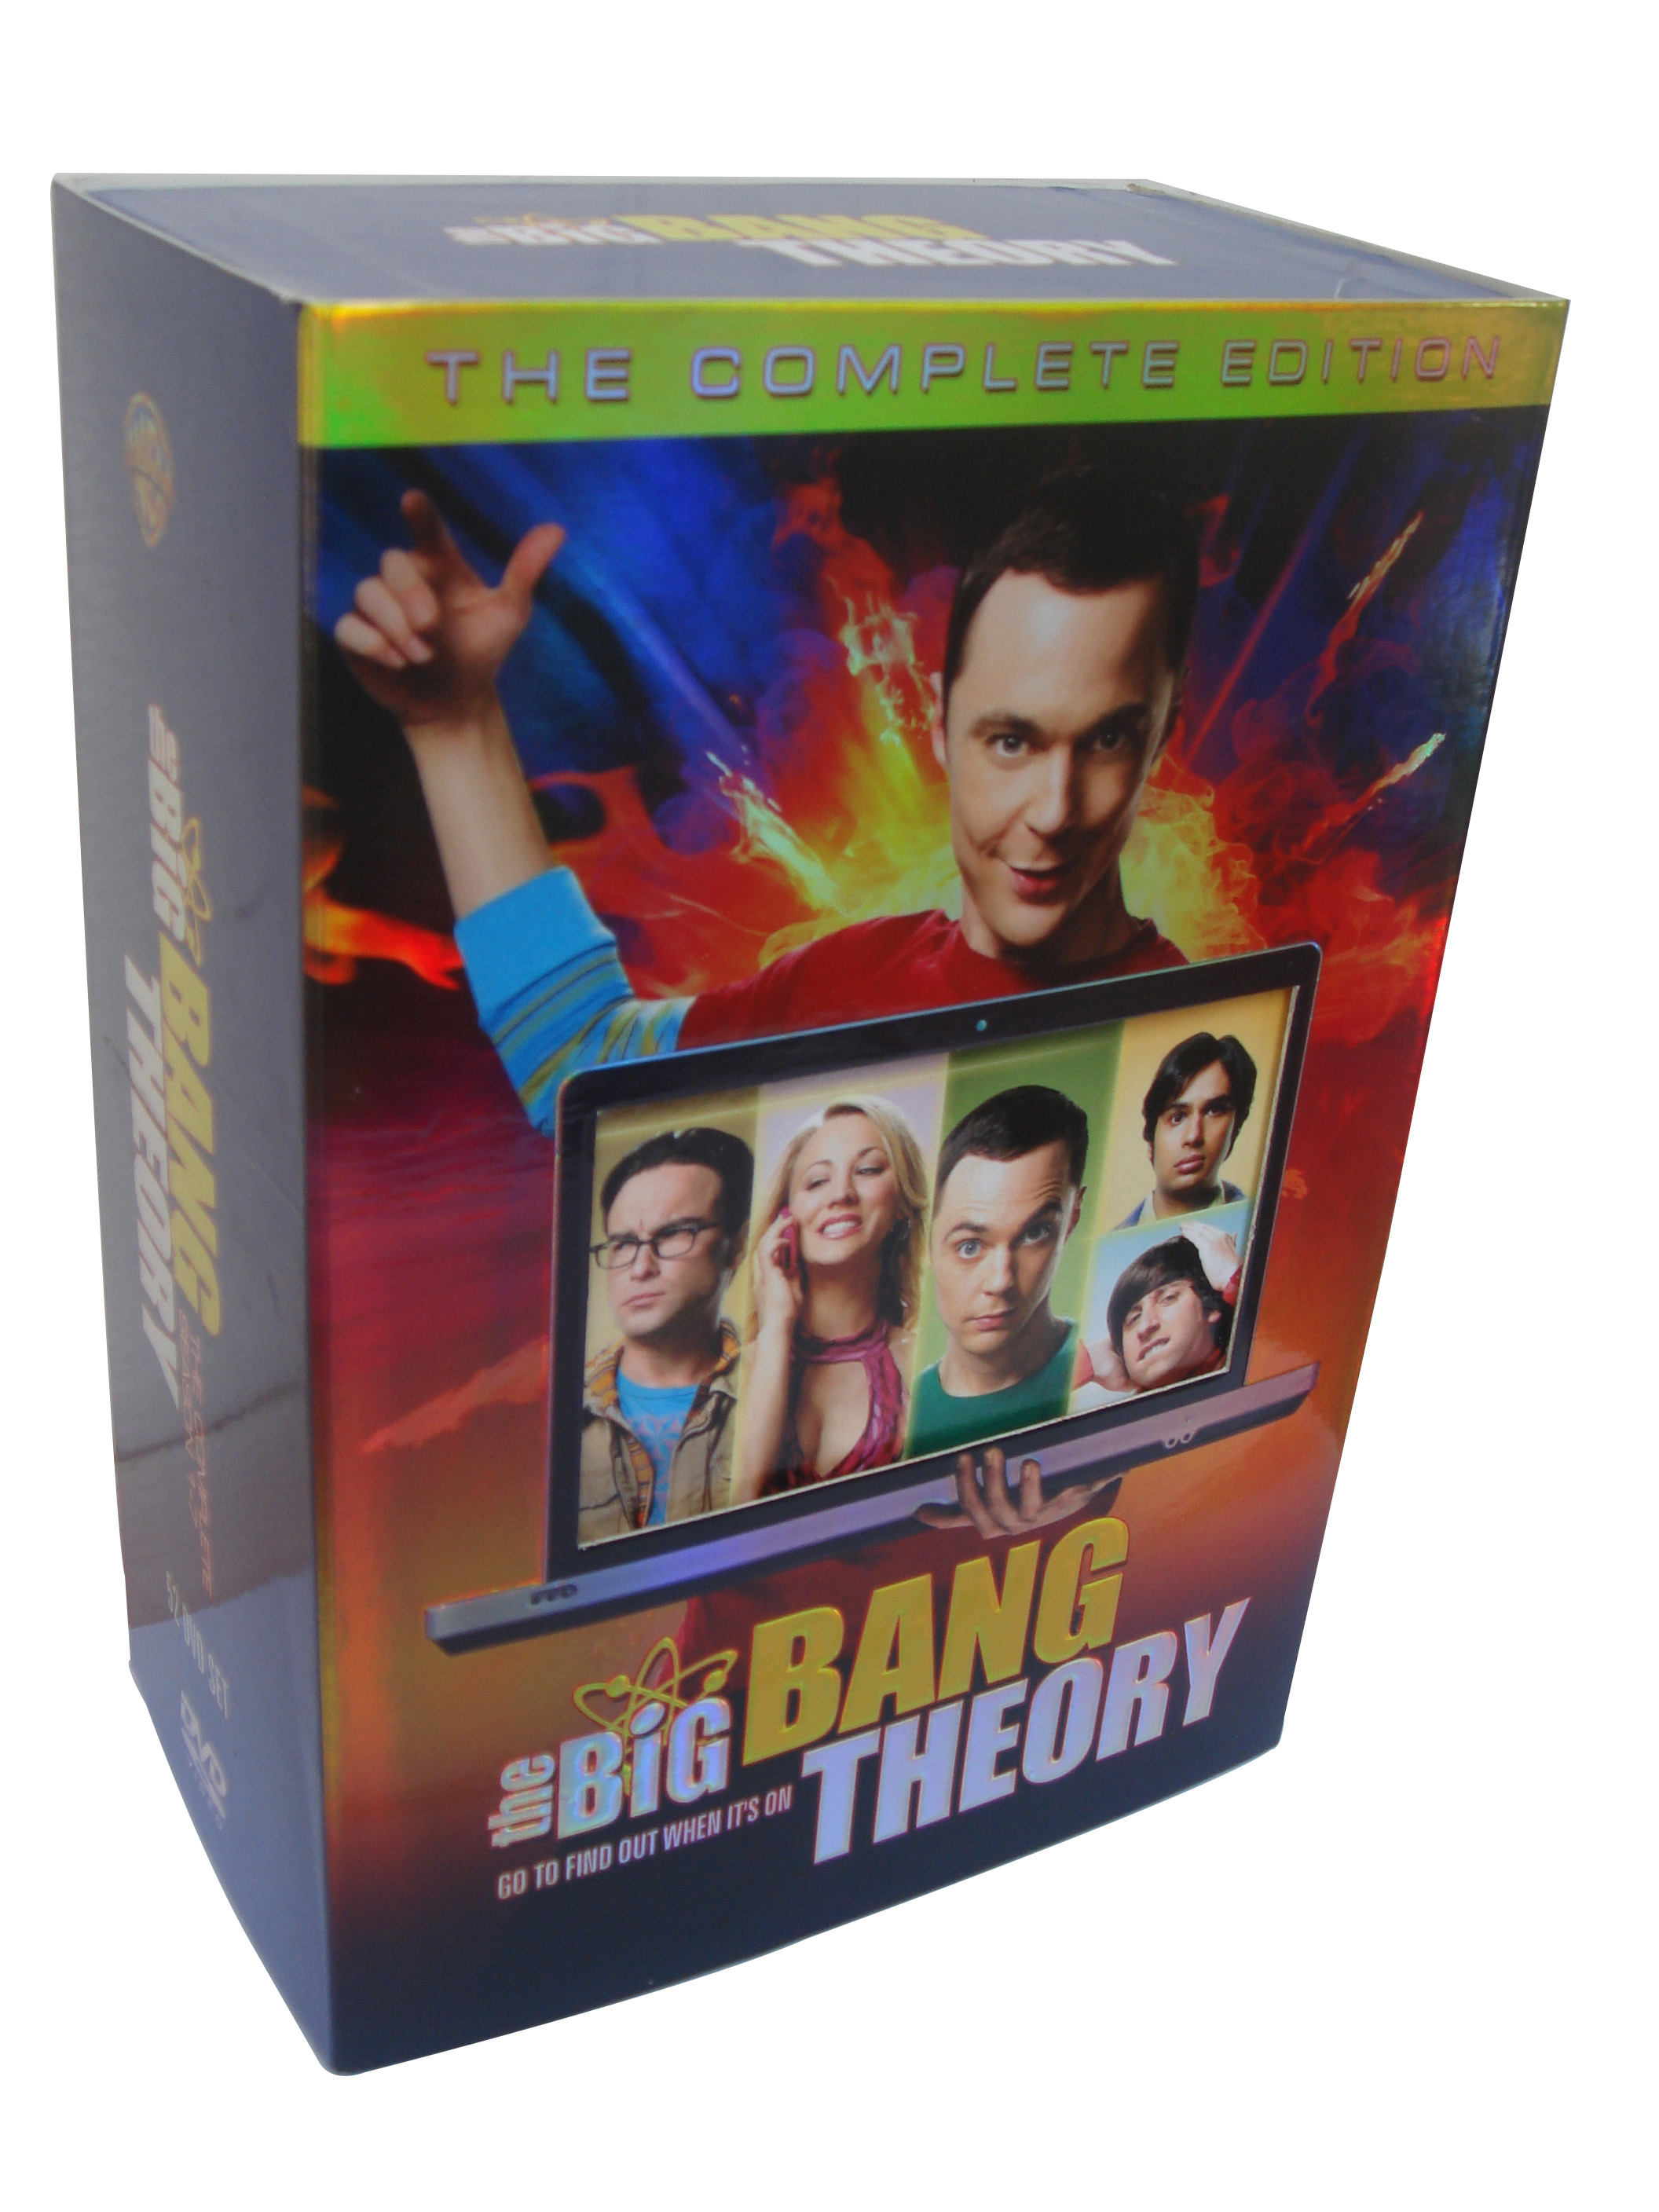 The Big Bang Theory Seasons 1-7 DVD Boxset